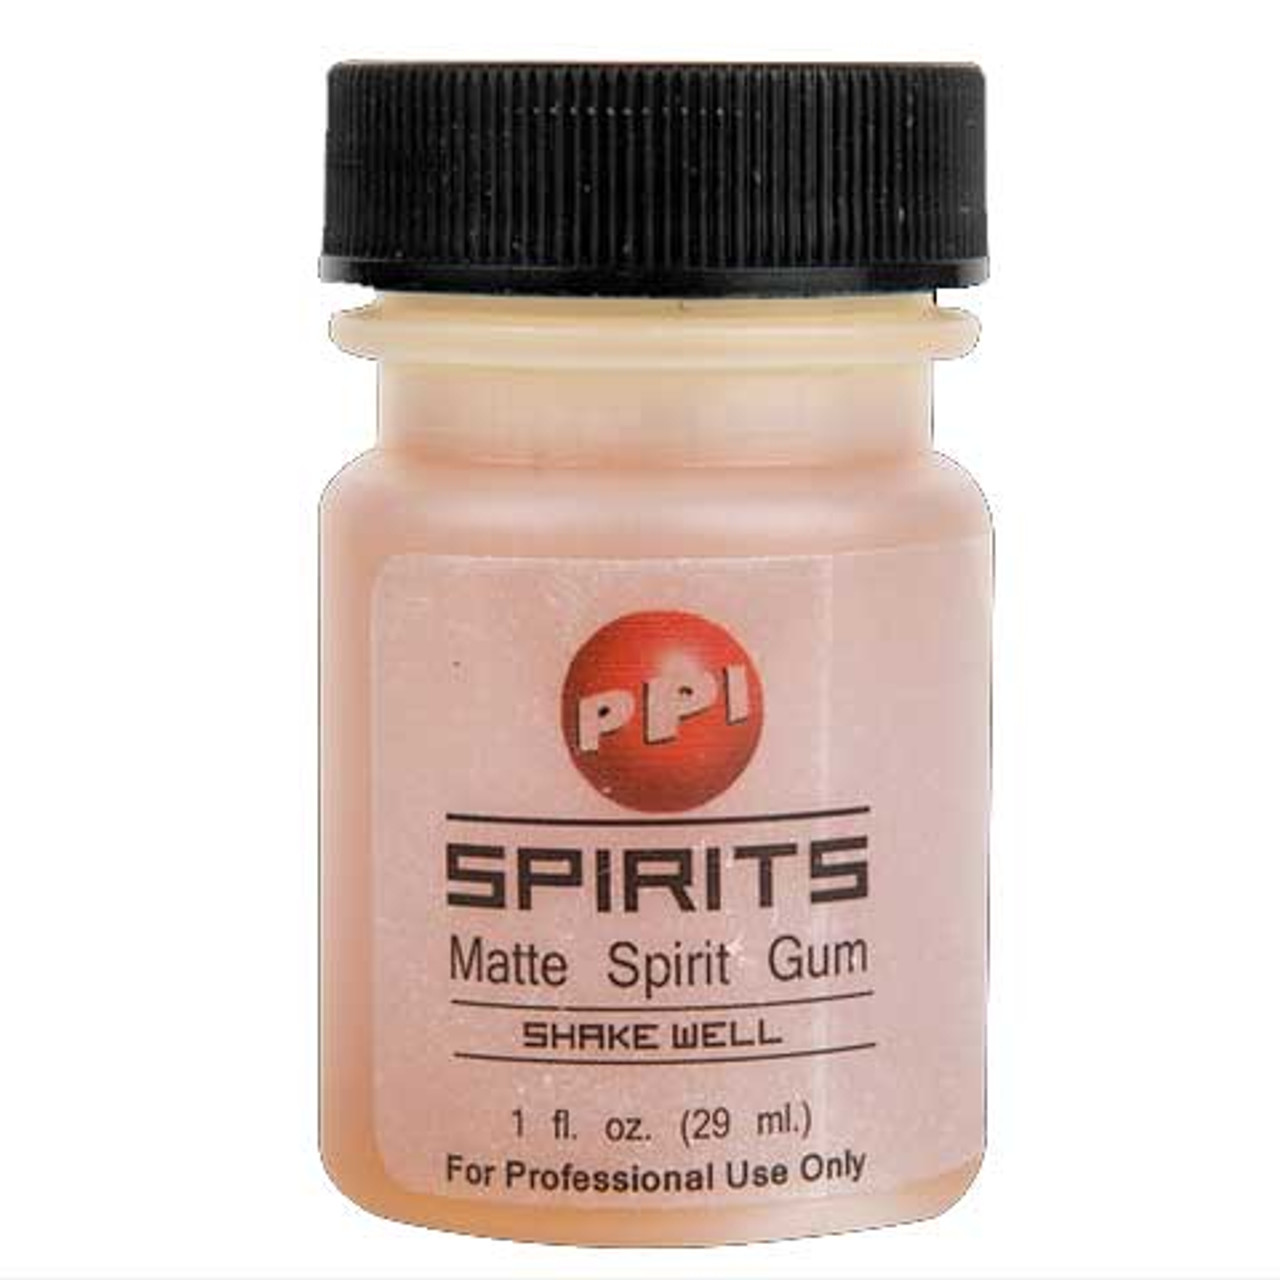 Spirit Gum 1/2 oz Bottle